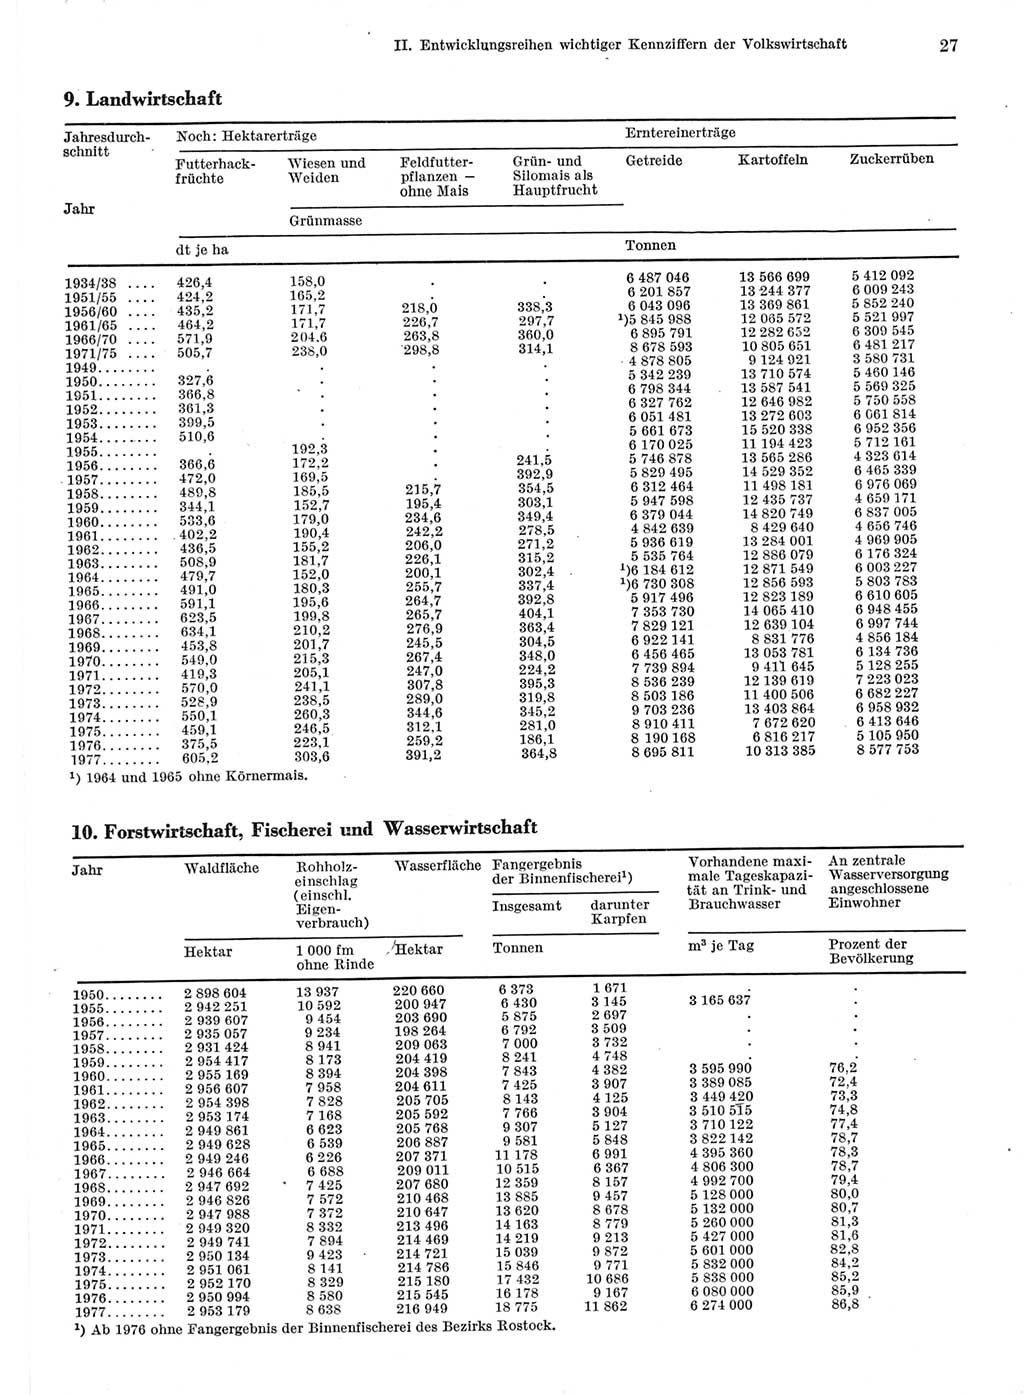 Statistisches Jahrbuch der Deutschen Demokratischen Republik (DDR) 1978, Seite 27 (Stat. Jb. DDR 1978, S. 27)